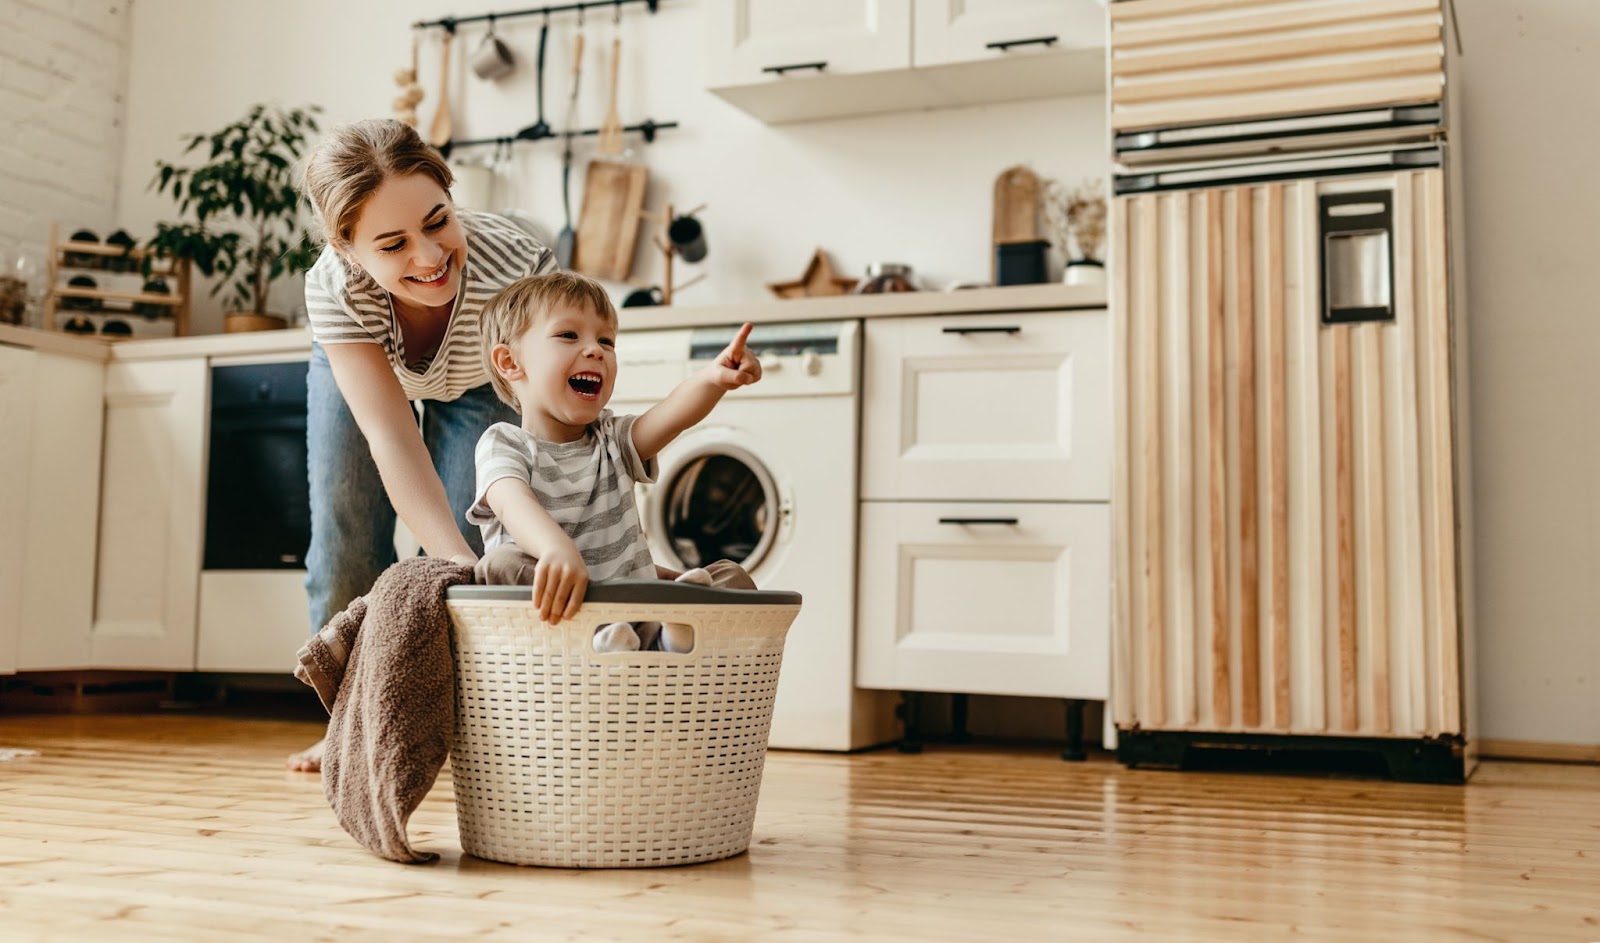 Syn s maminkou hravě pomáhá s praním prádla